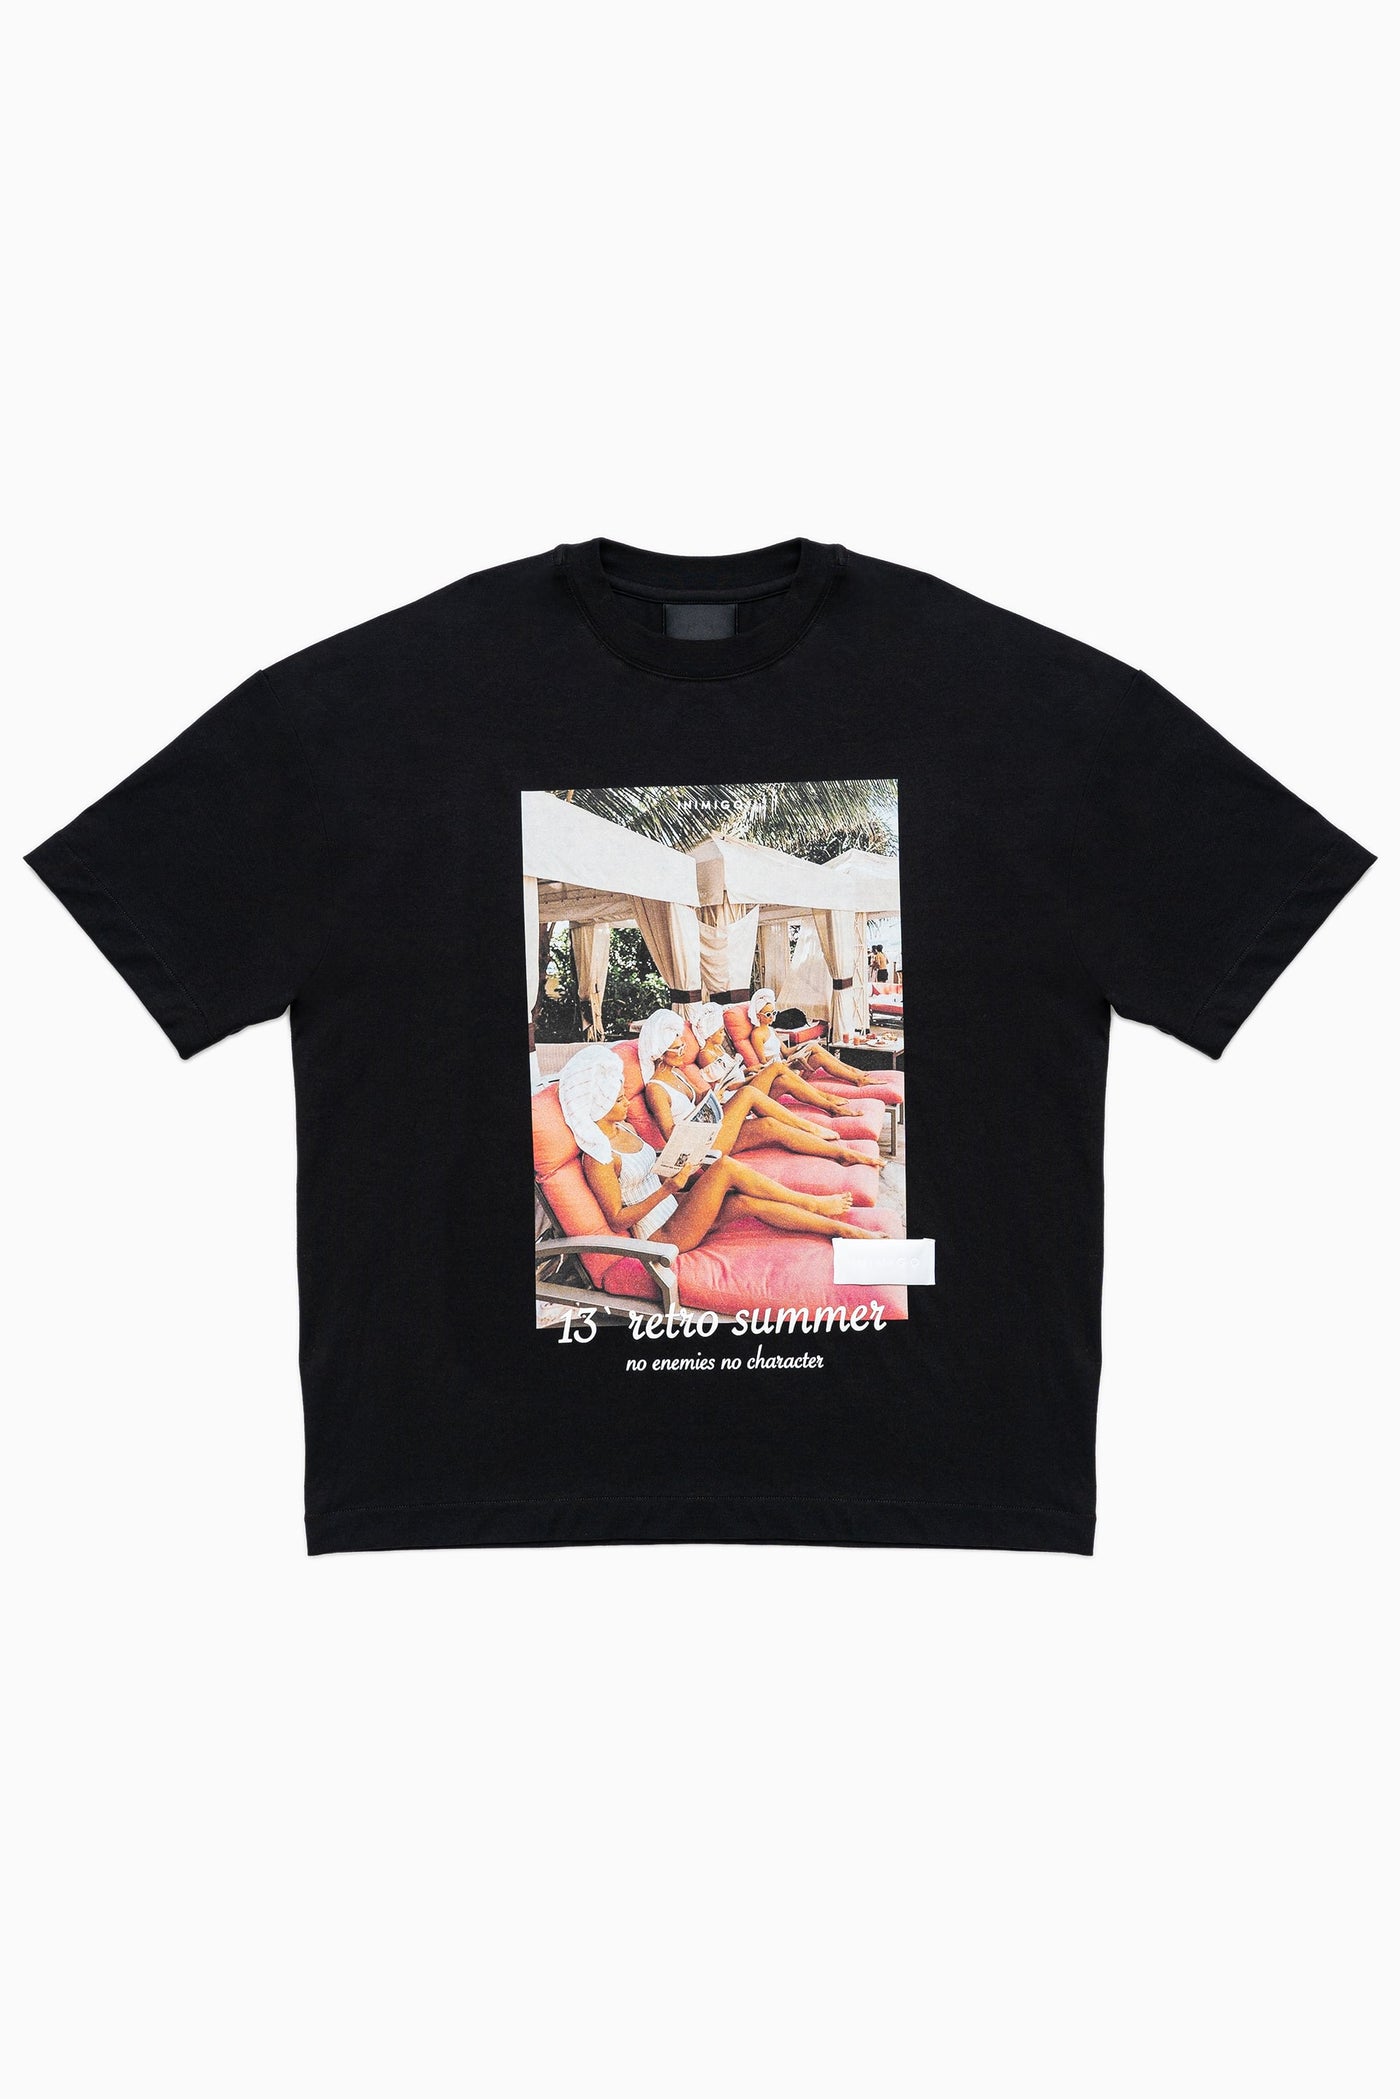 80's Sun Lounger Oversized T-shirt